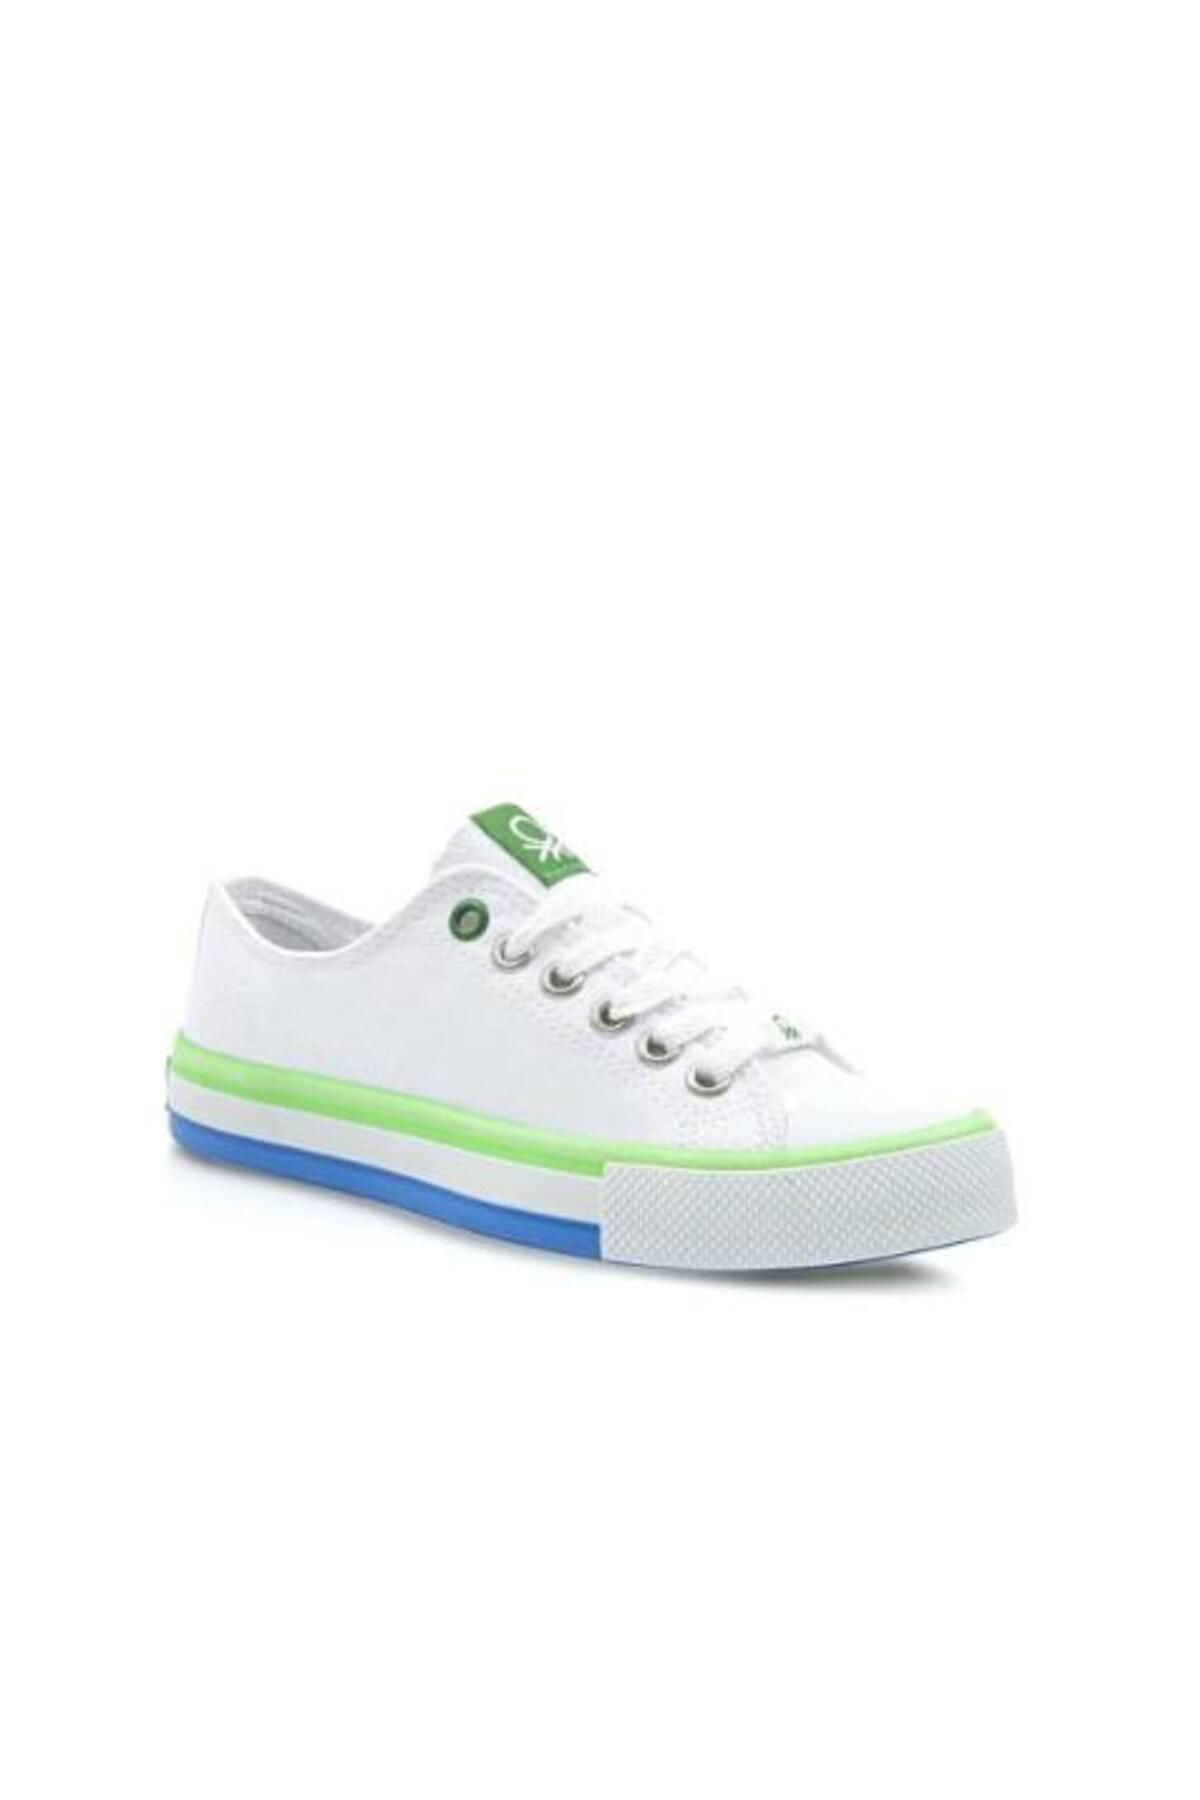 Benetton Bn-30191 Erkek Sneaker Spor Ayakkabı -beyaz-yeşil